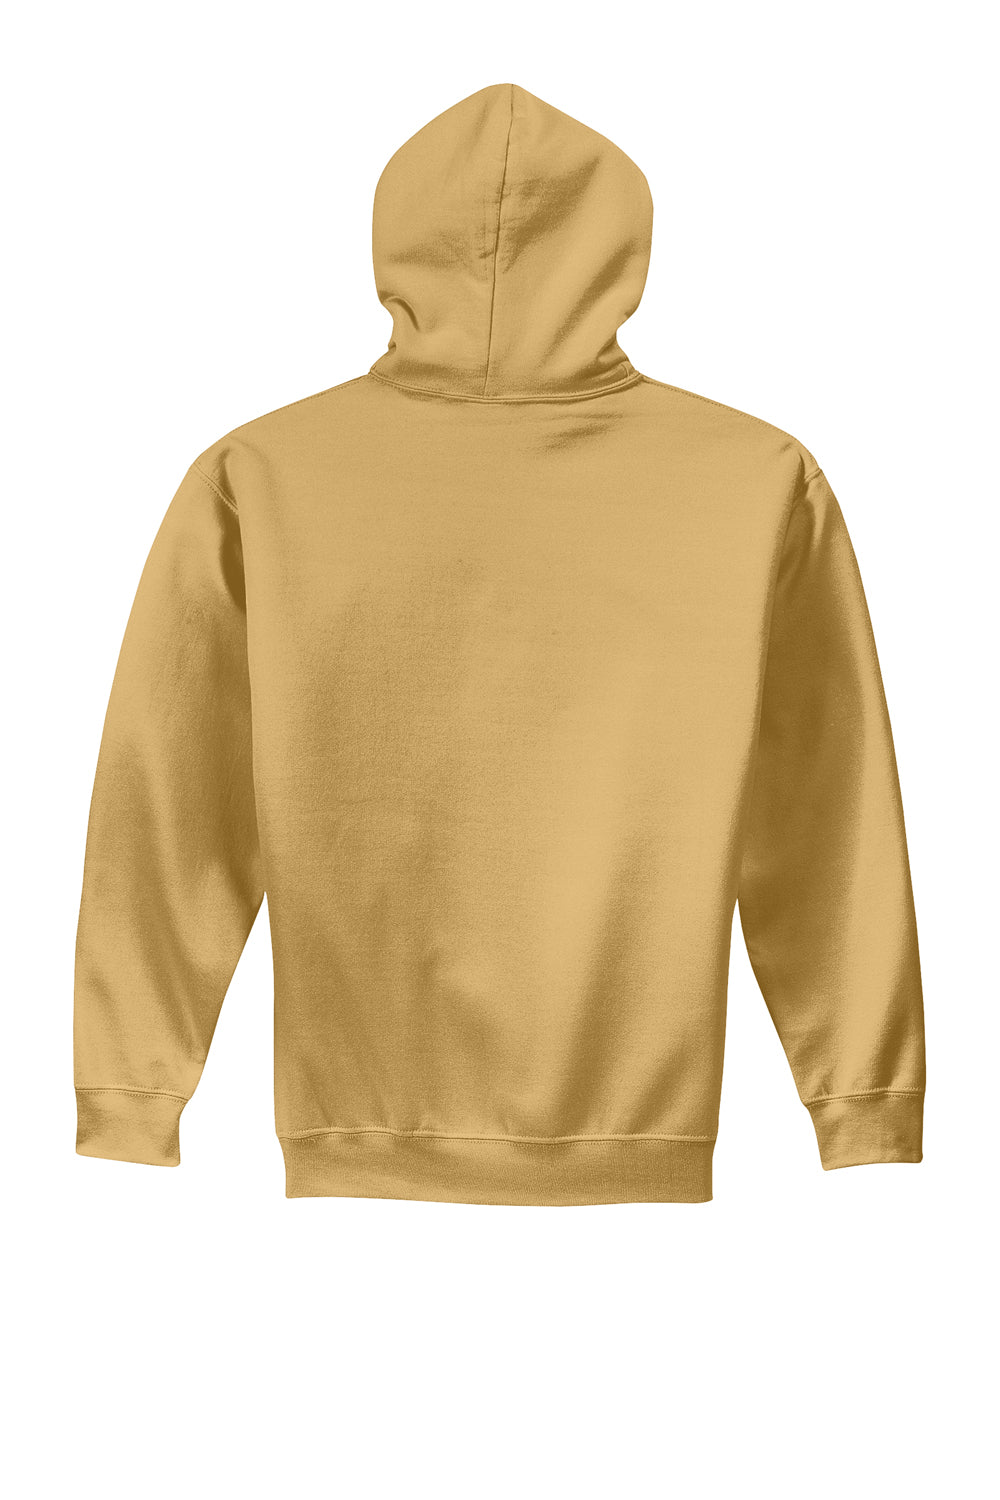 Gildan Mens Hooded Sweatshirt Hoodie Old Gold Flat Back